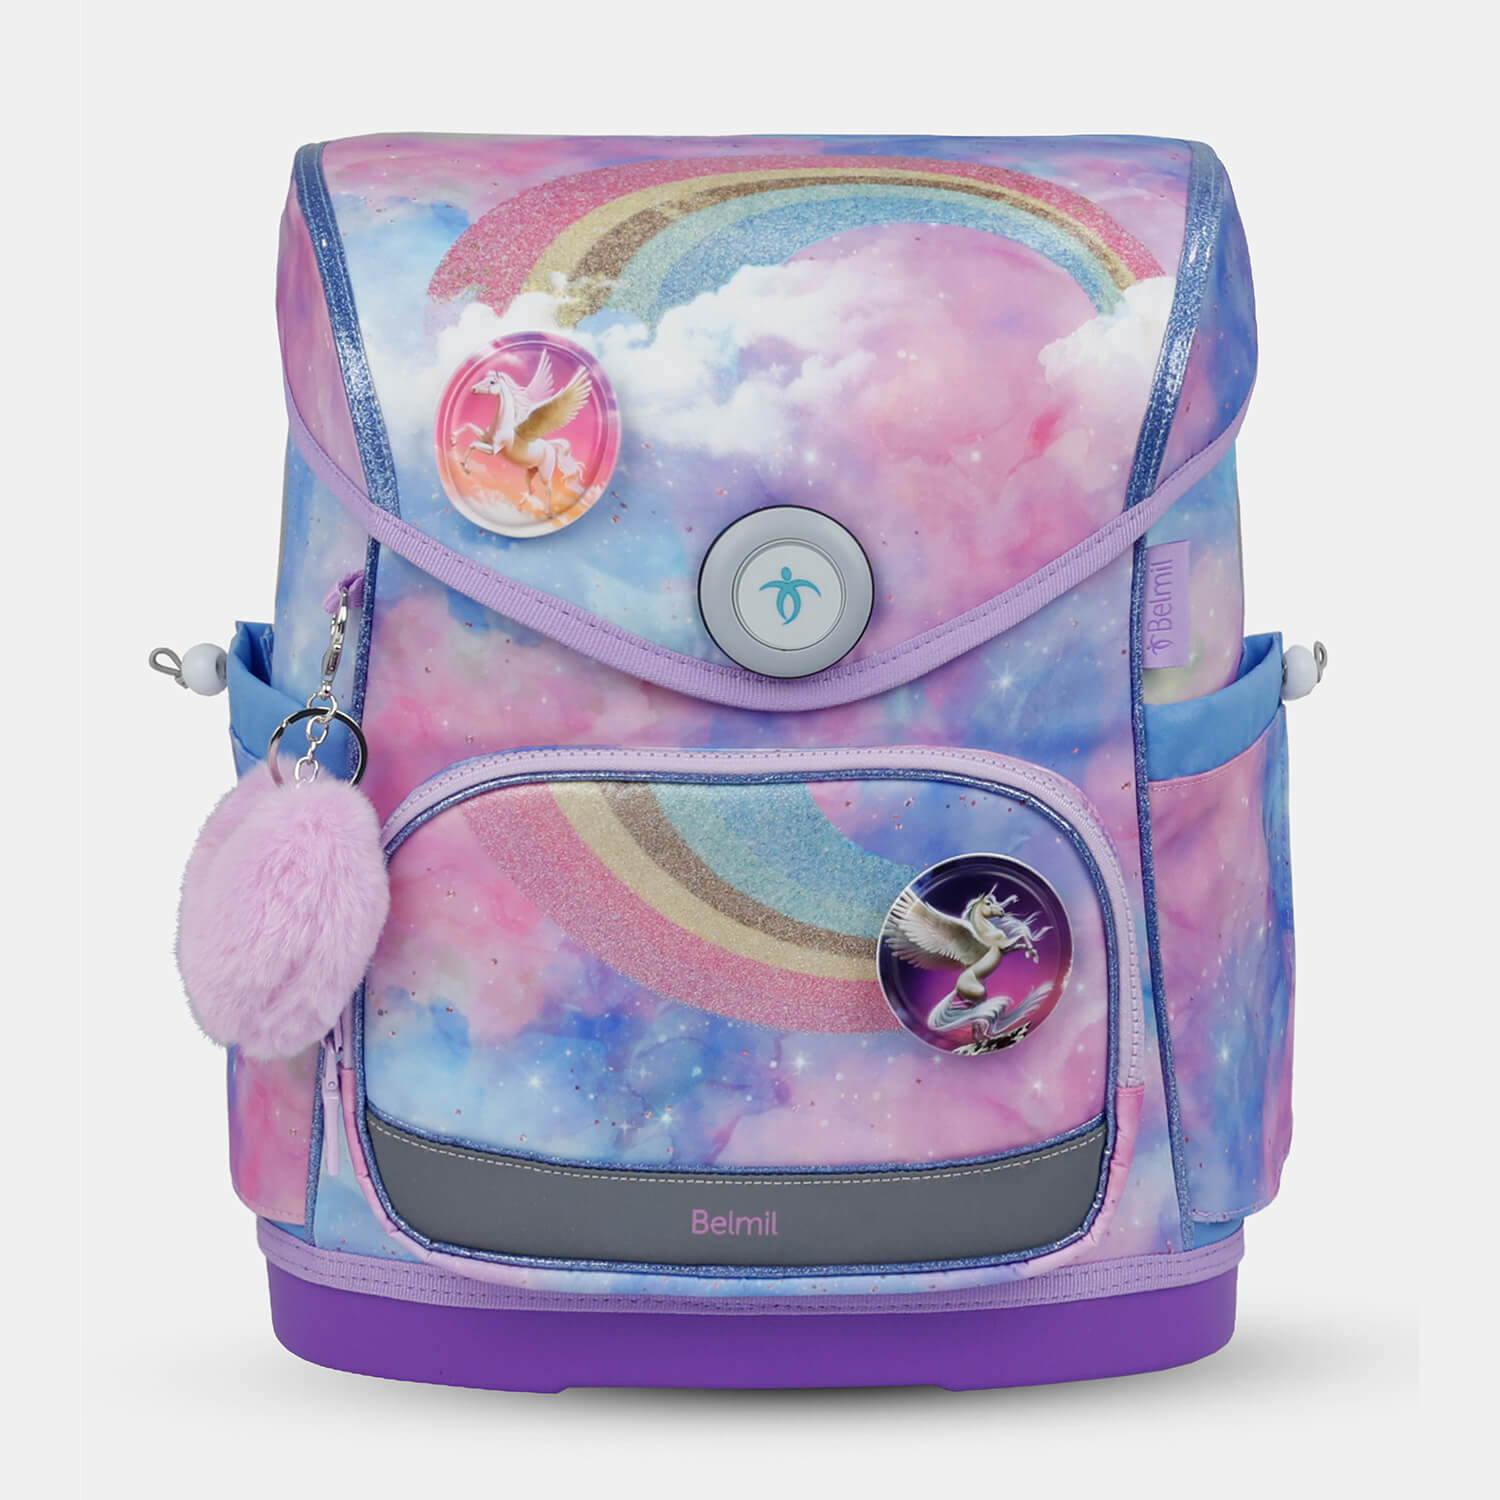 Compact Plus Moonlight Schoolbag set 5pcs.